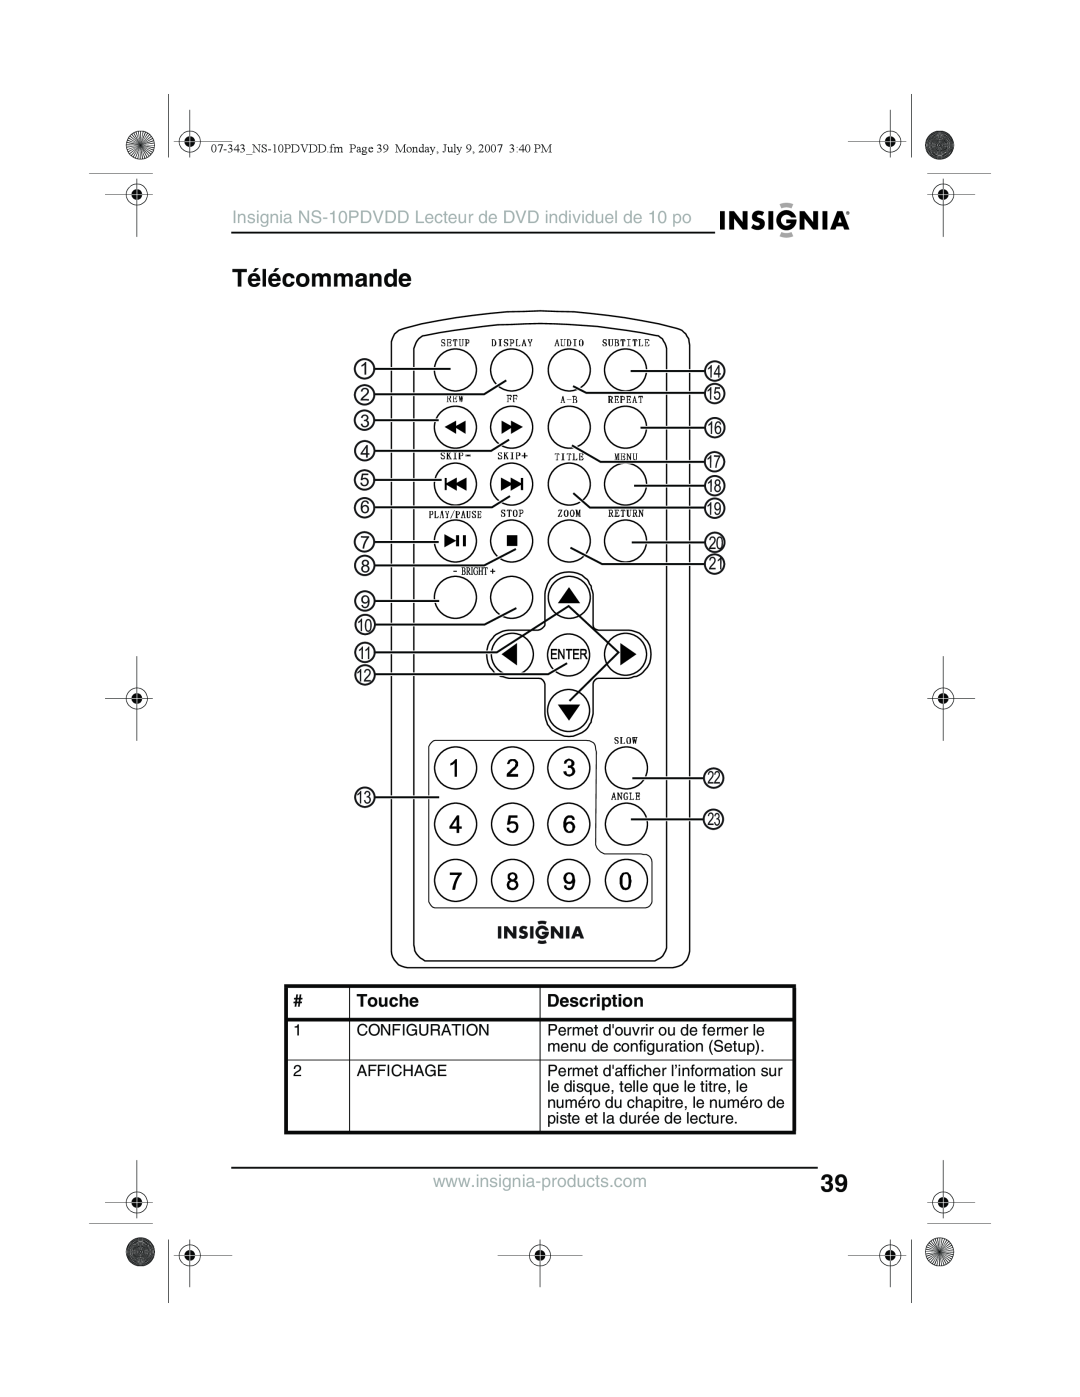 Insignia Télécommande, Touche, Insignia NS-10PDVDD Lecteur de DVD individuel de 10 po, 1 2 4 5, 17 18, Description 